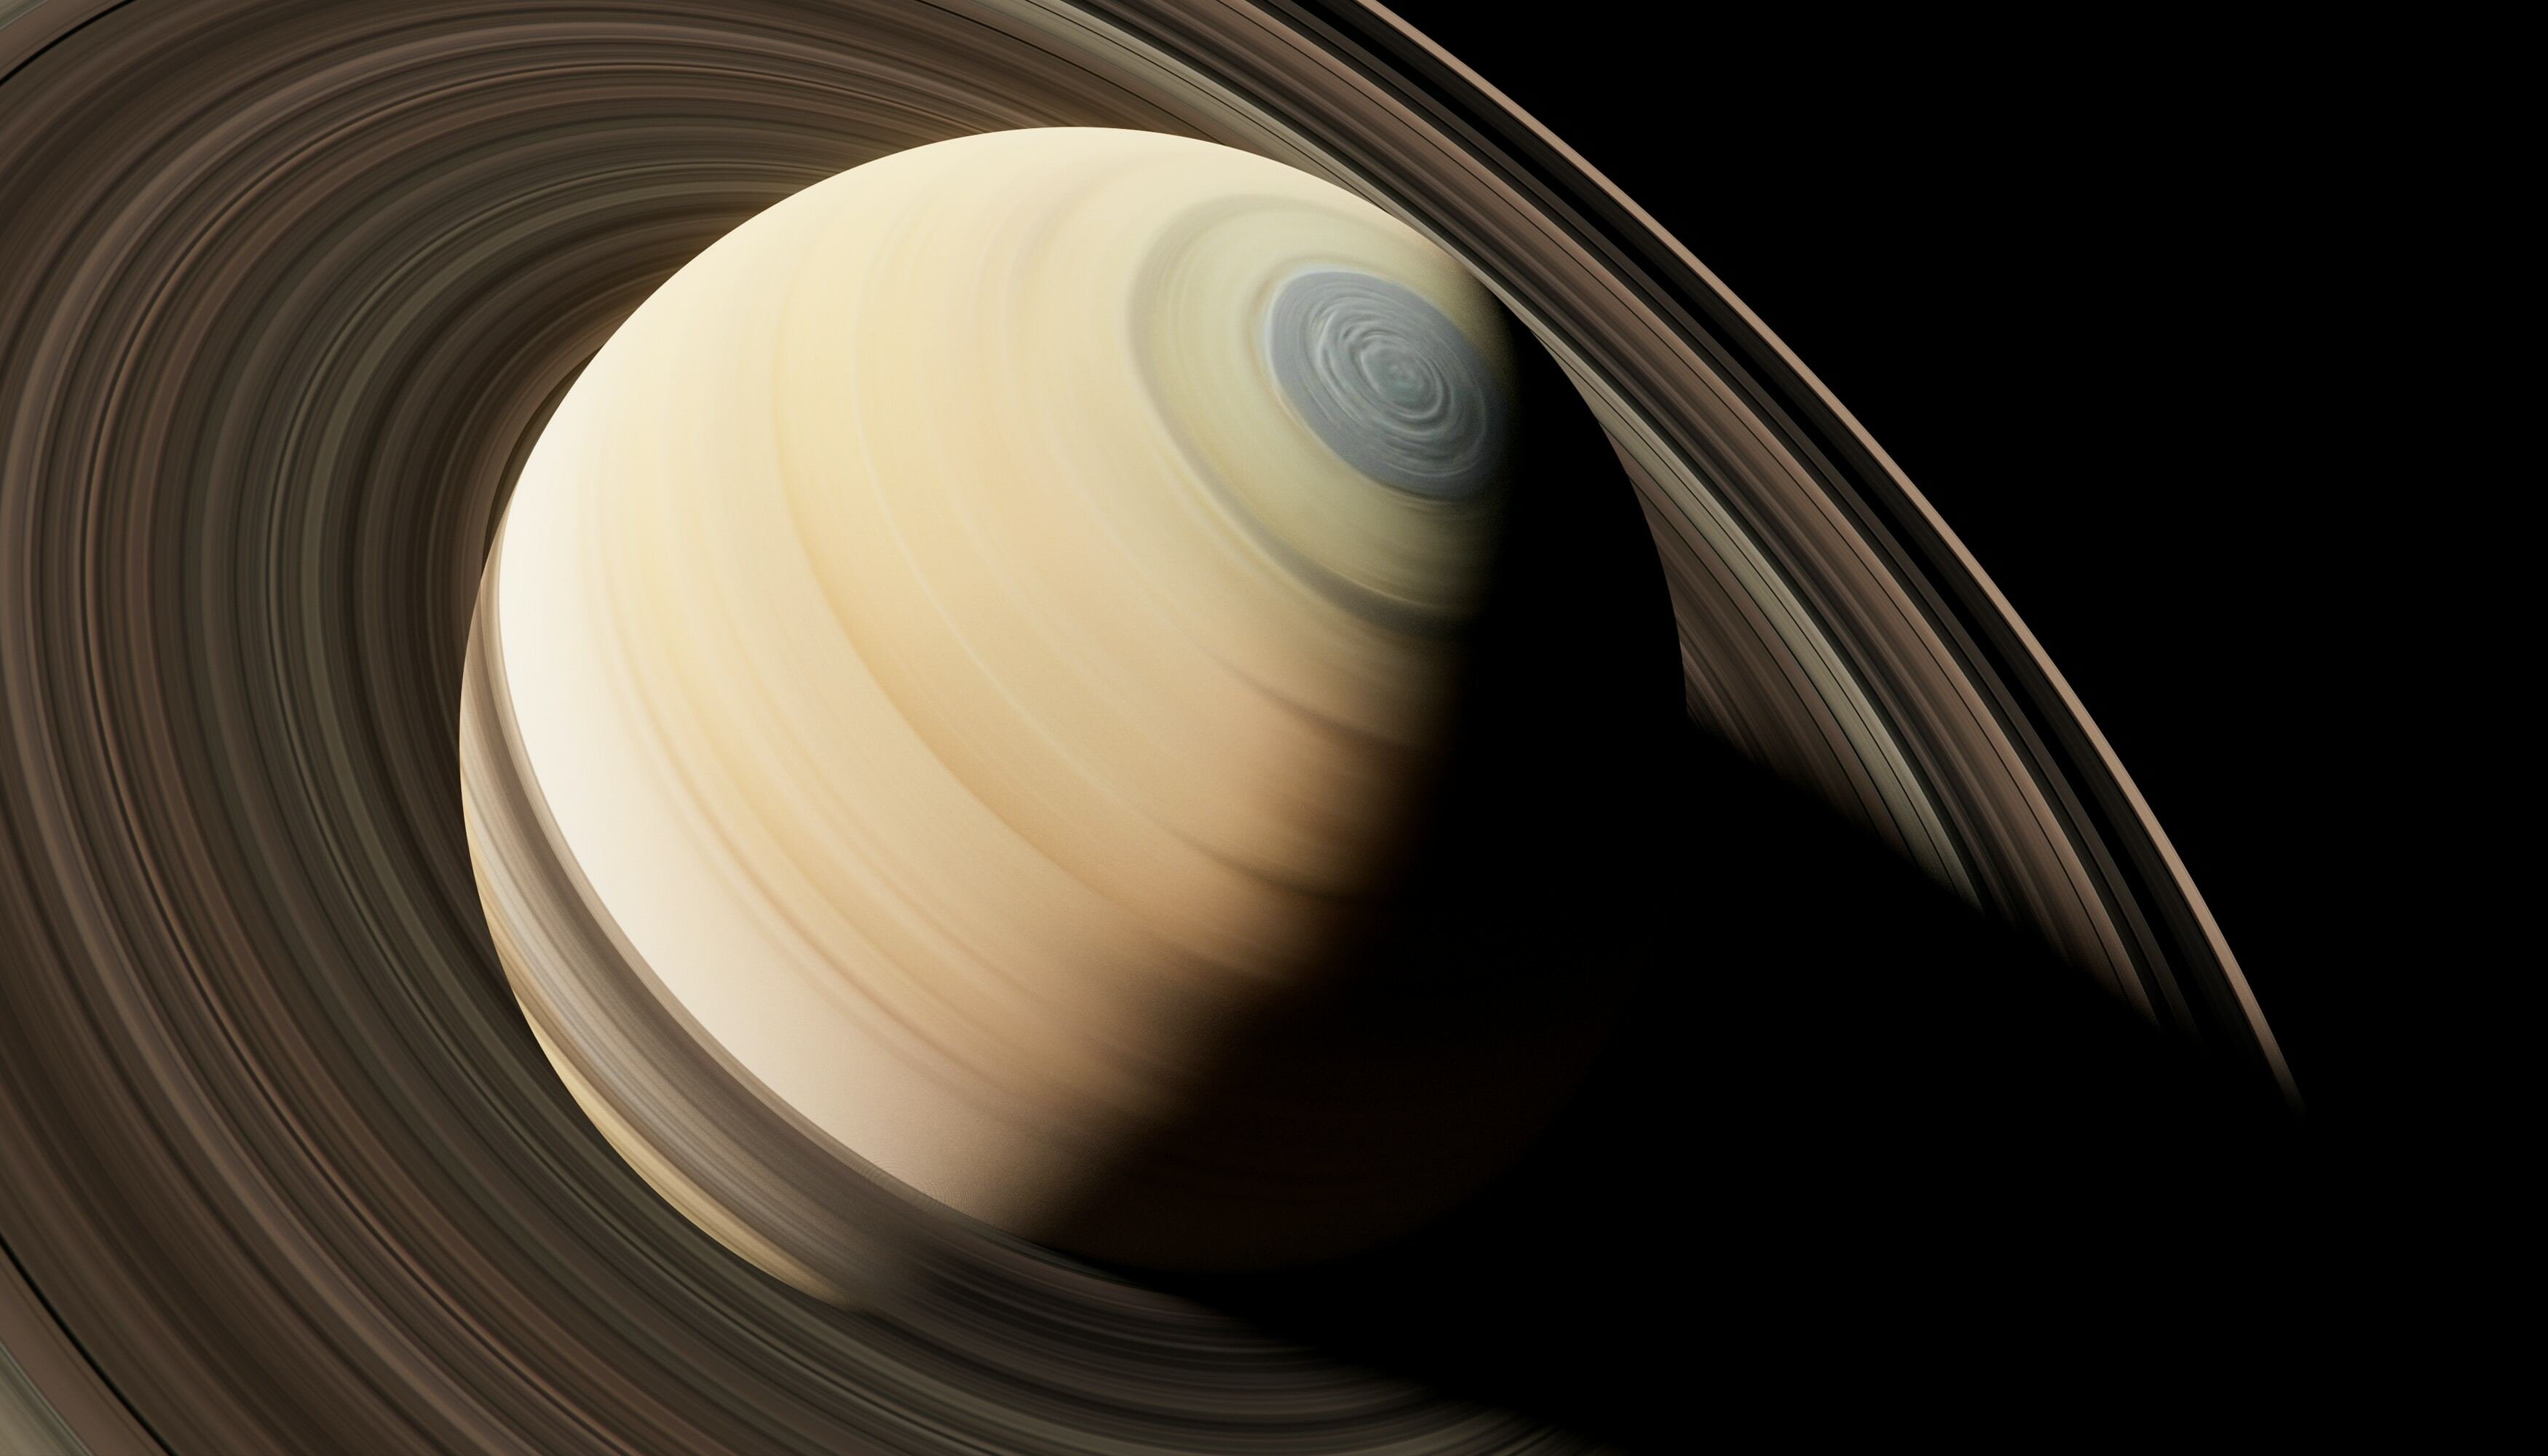 Planeta Saturno em tons amarelos, observado em diagonal com destaque para os seus anéis.